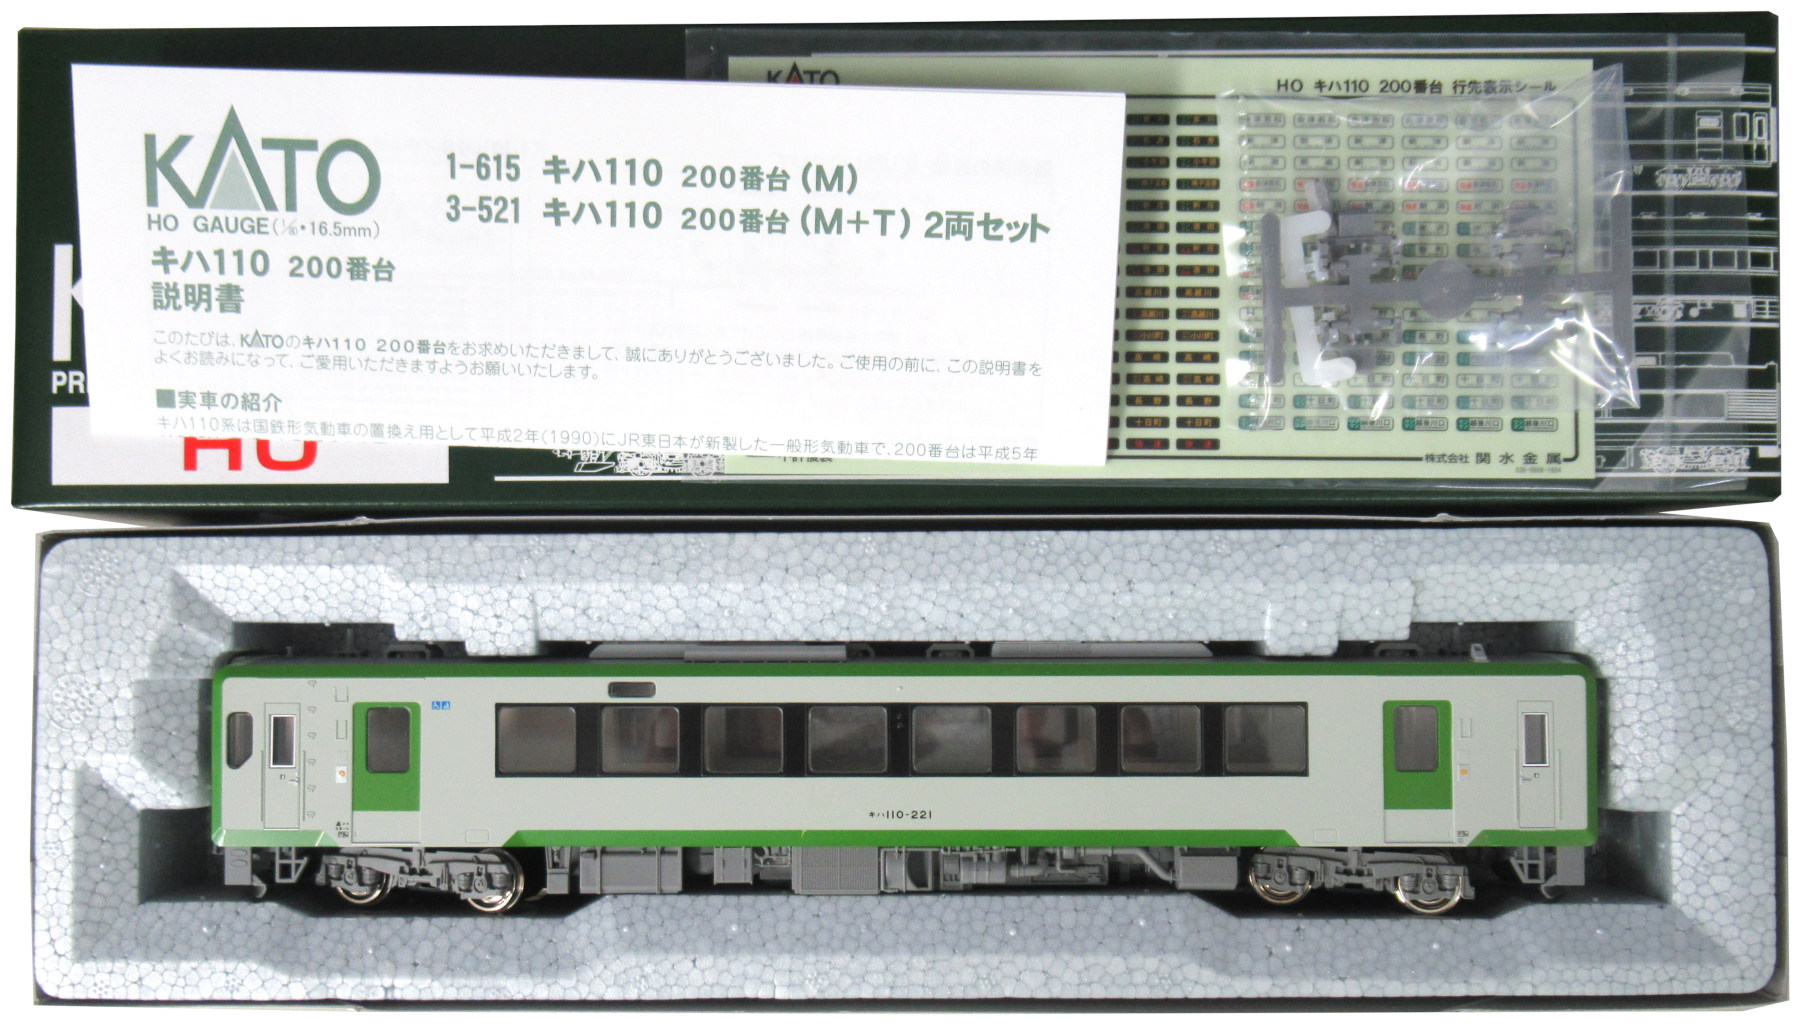 品質保証 KATO キハ110系 Nゲージ キハ110-100 6043 動力付き キハ110 